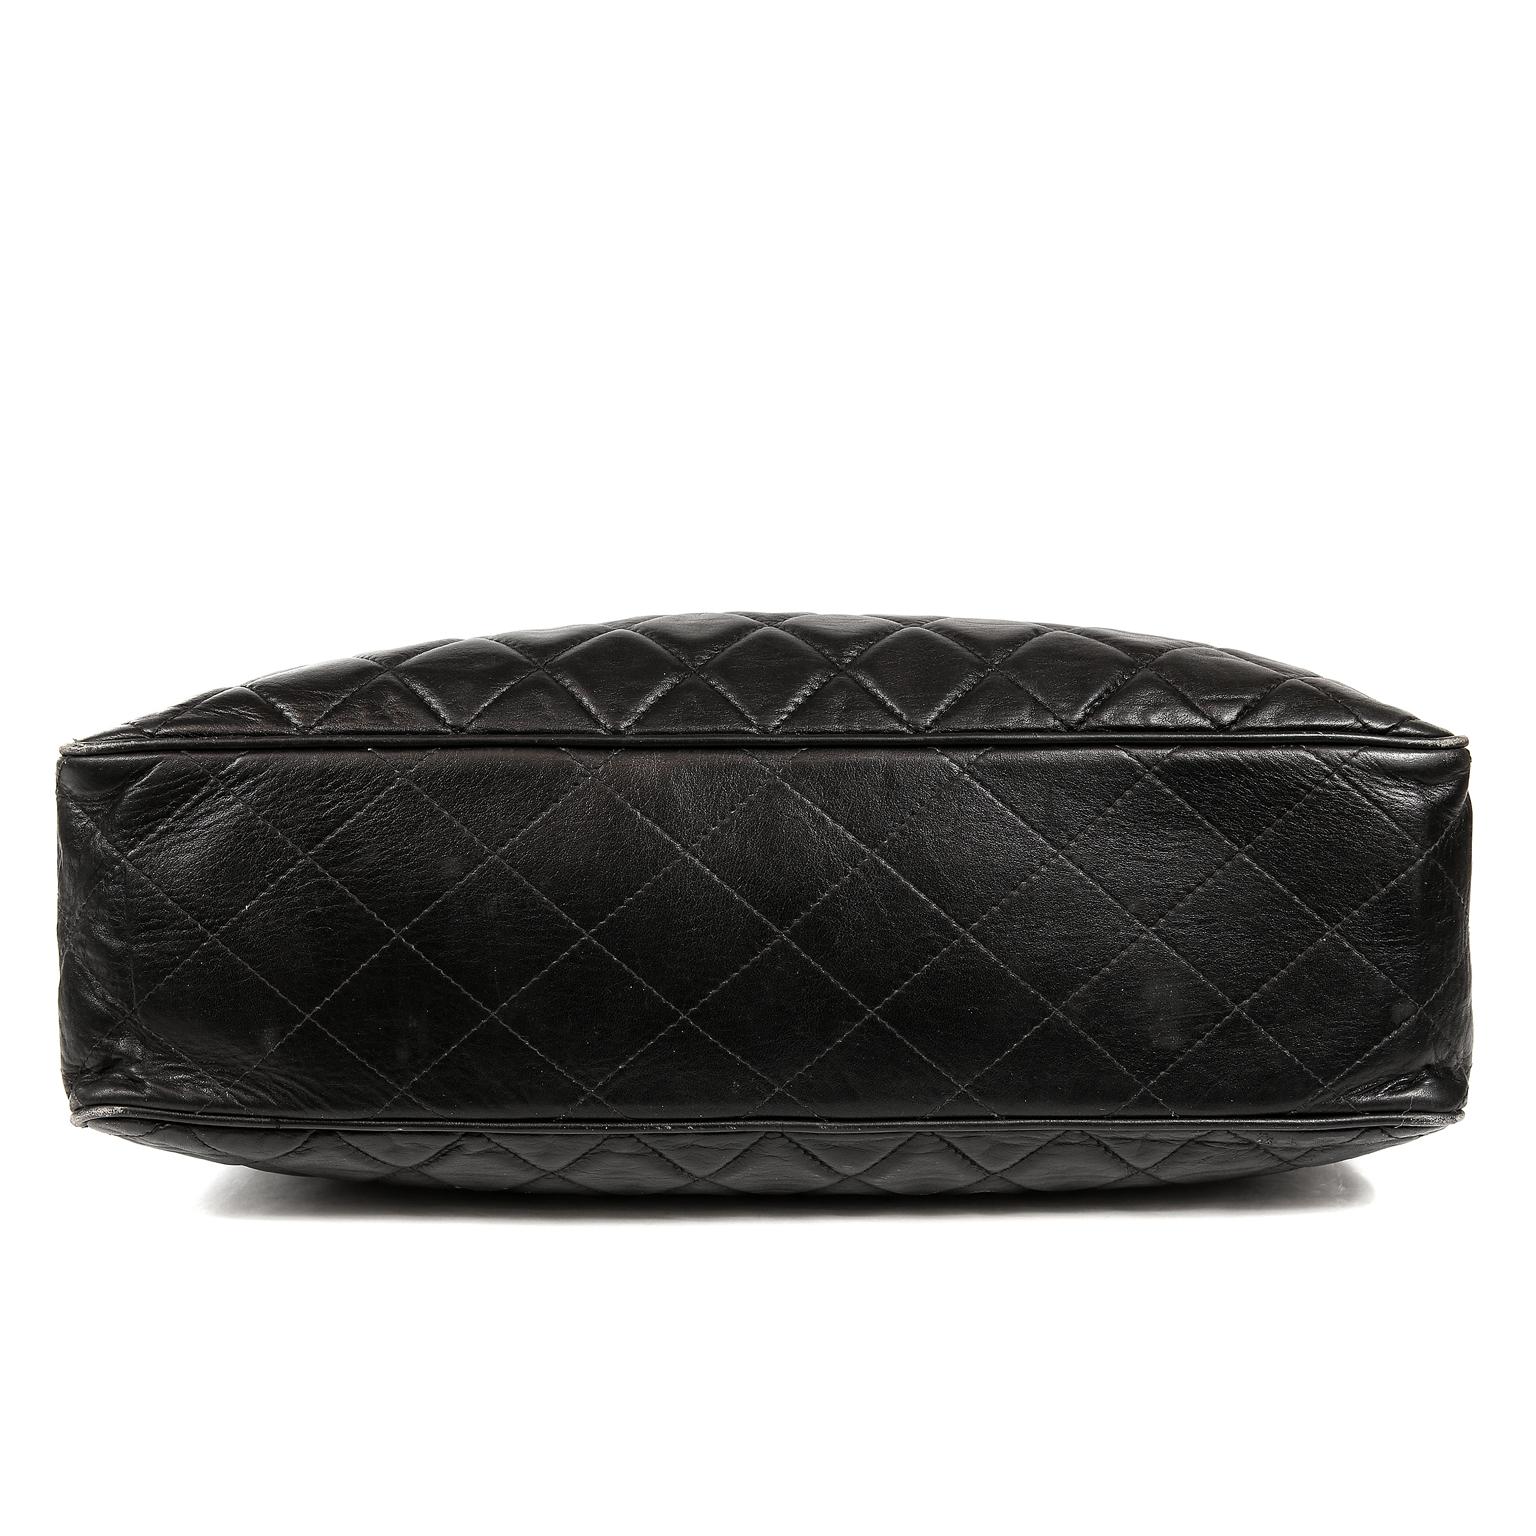 Chanel Black Leather Large Vintage Tote bag 1